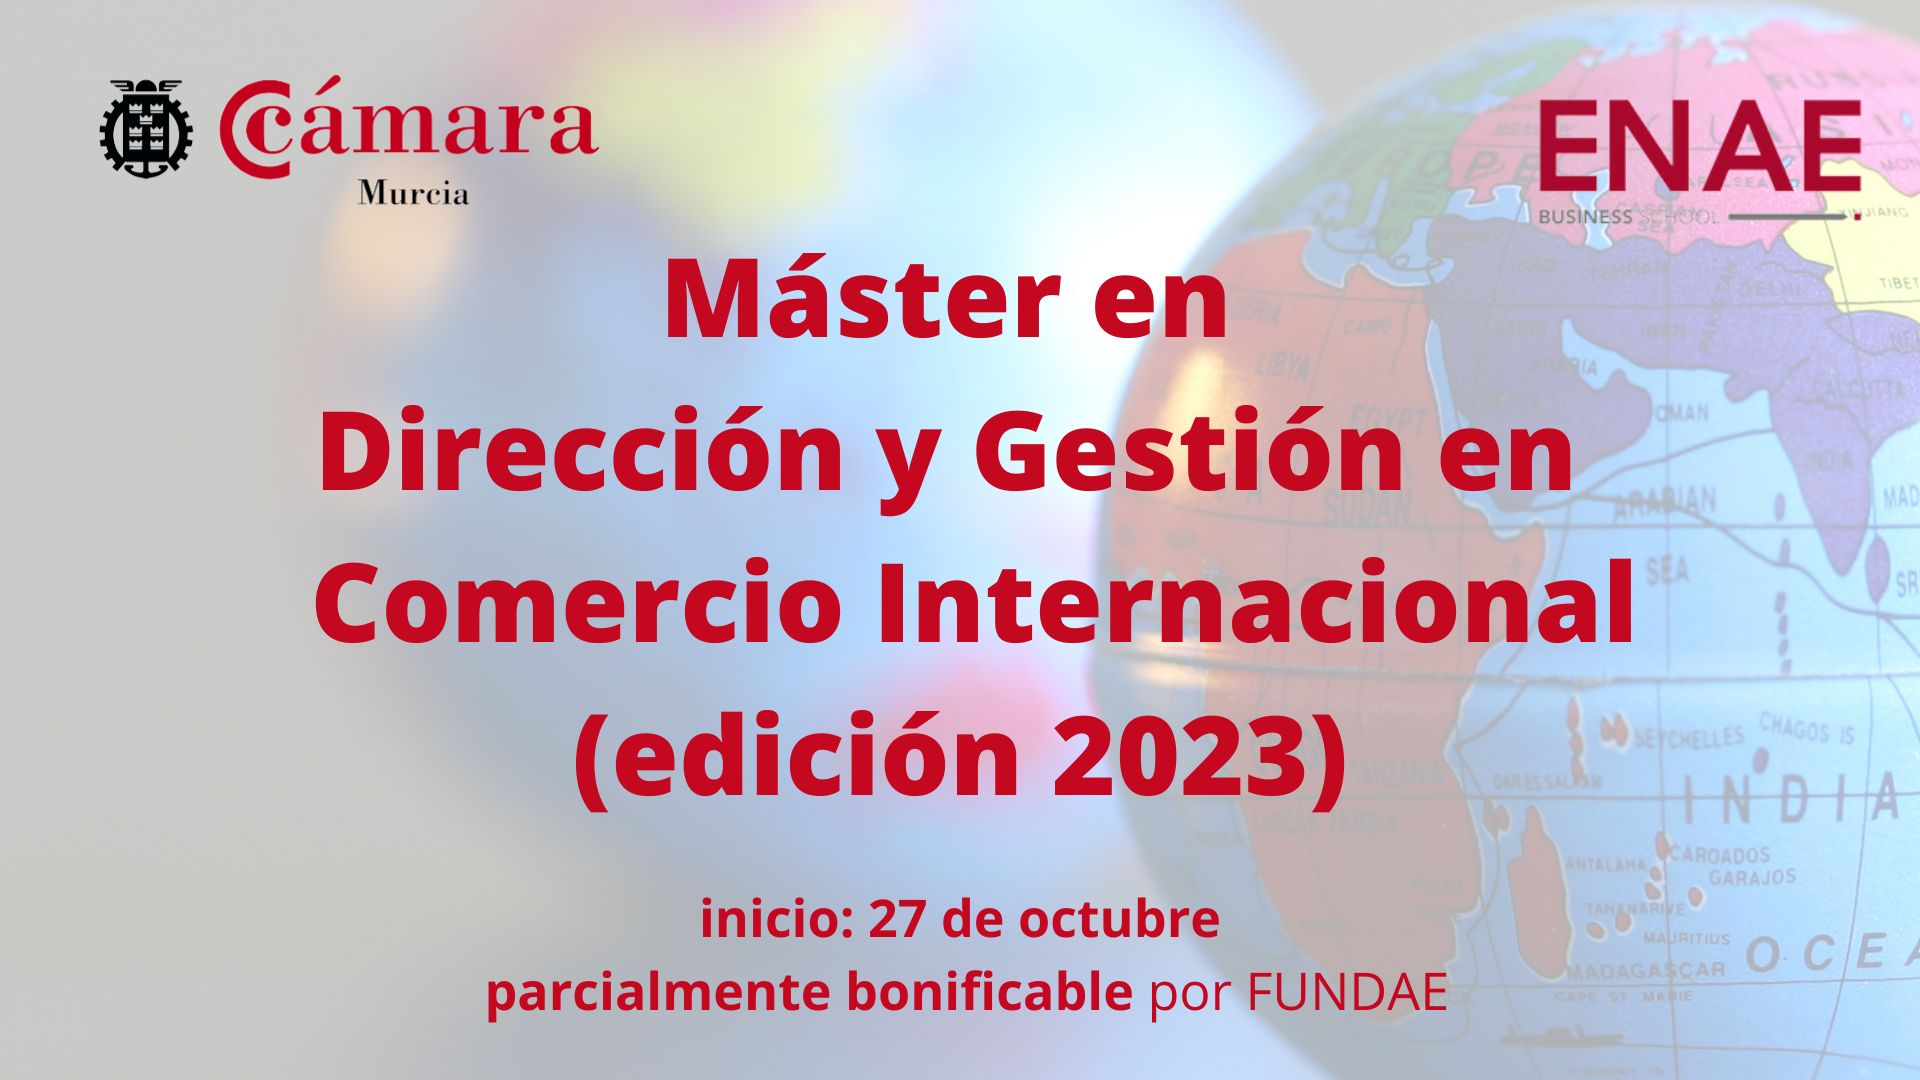 Máster | Dirección y Gestión en Comercio Internacional | Cámara de Comercio de Murcia | ENAE Business School